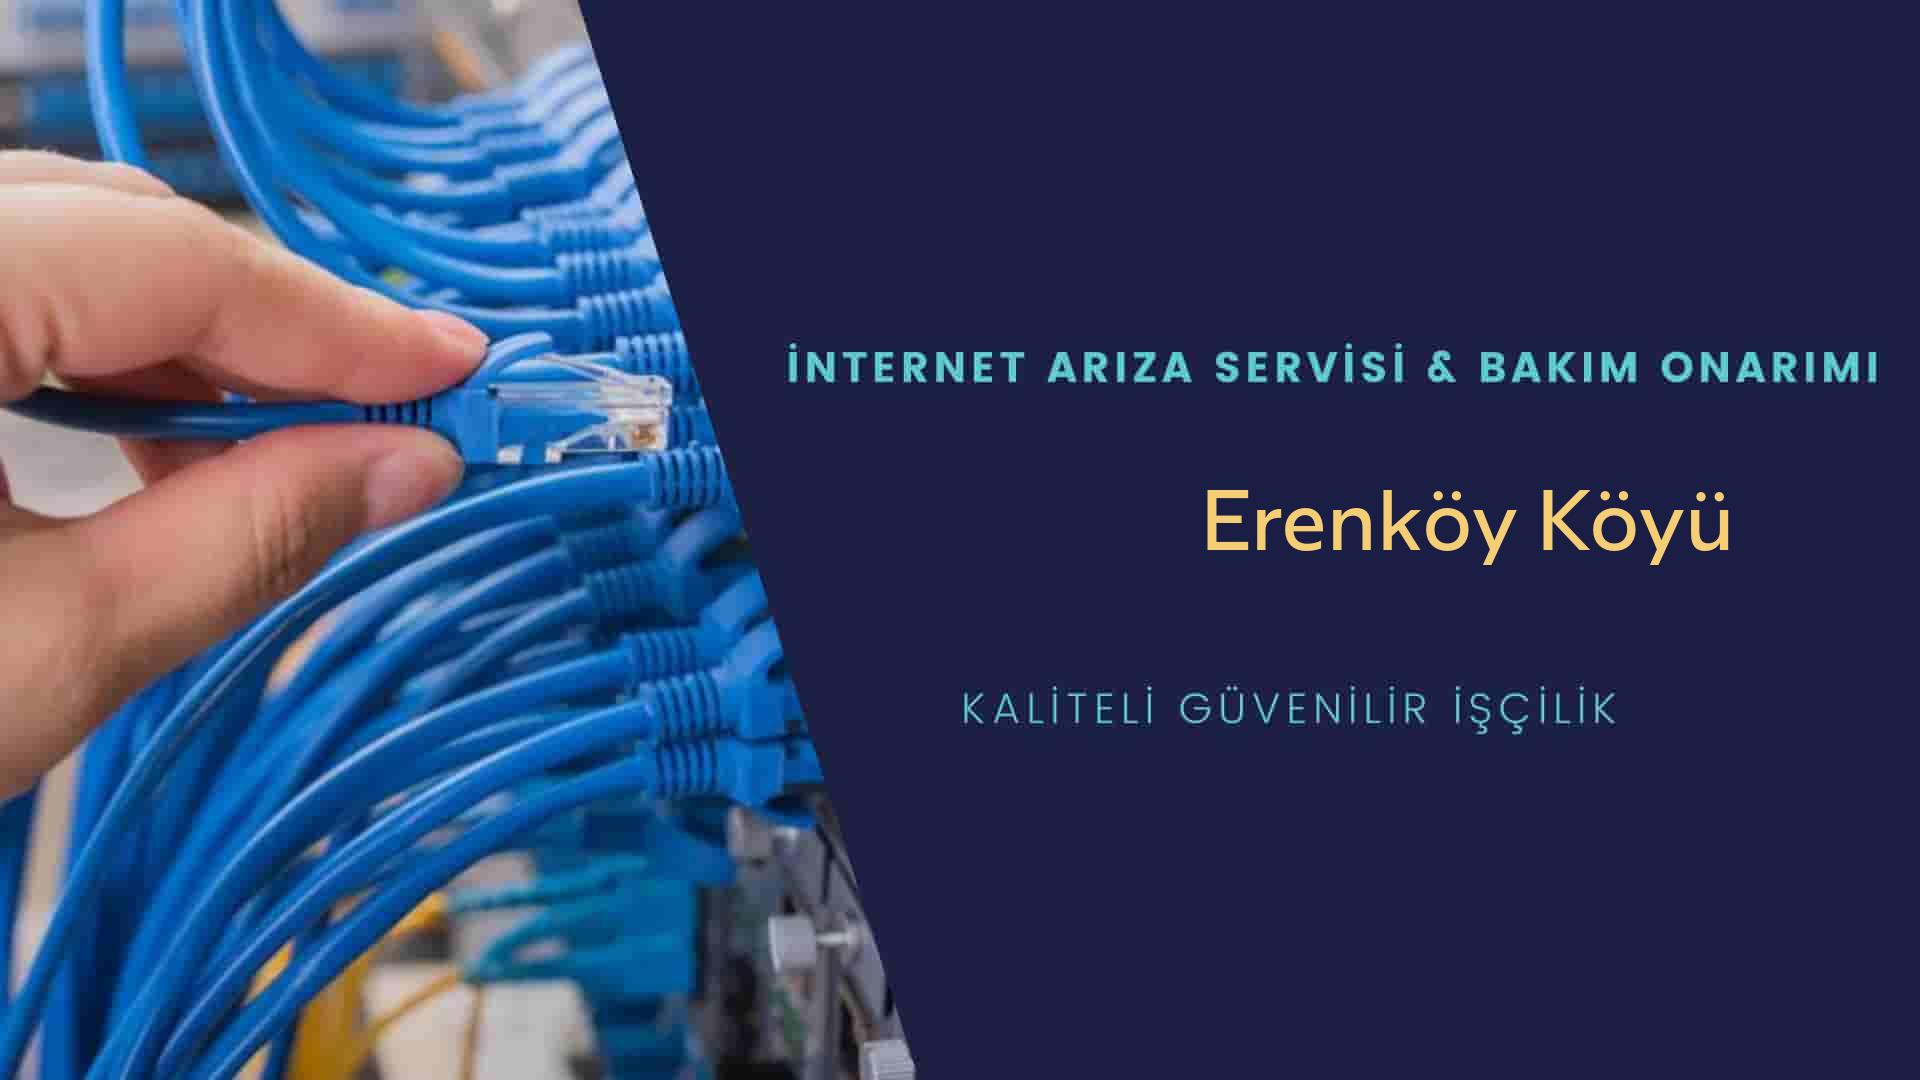 Erenköy Köyü internet kablosu çekimi yapan yerler veya elektrikçiler mi? arıyorsunuz doğru yerdesiniz o zaman sizlere 7/24 yardımcı olacak profesyonel ustalarımız bir telefon kadar yakındır size.